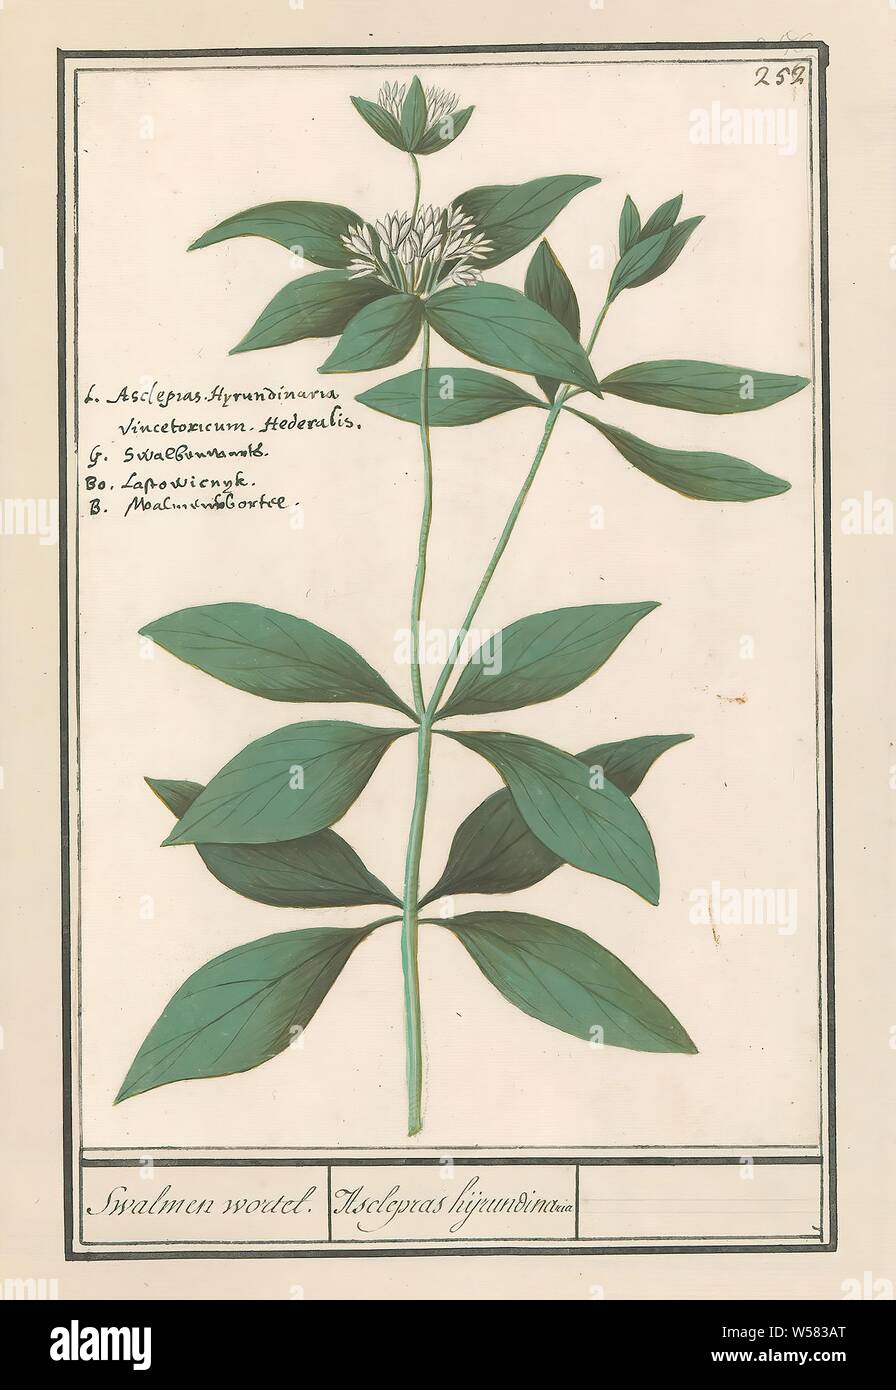 Planta de seda (Asclepias syriaca) Swalmen root. / Asclepras hijrundinaria  (título de objeto), planta de seda o tragar root. Superior derecha:  numerada 252. Arriba a la izquierda el nombre en cuatro idiomas.